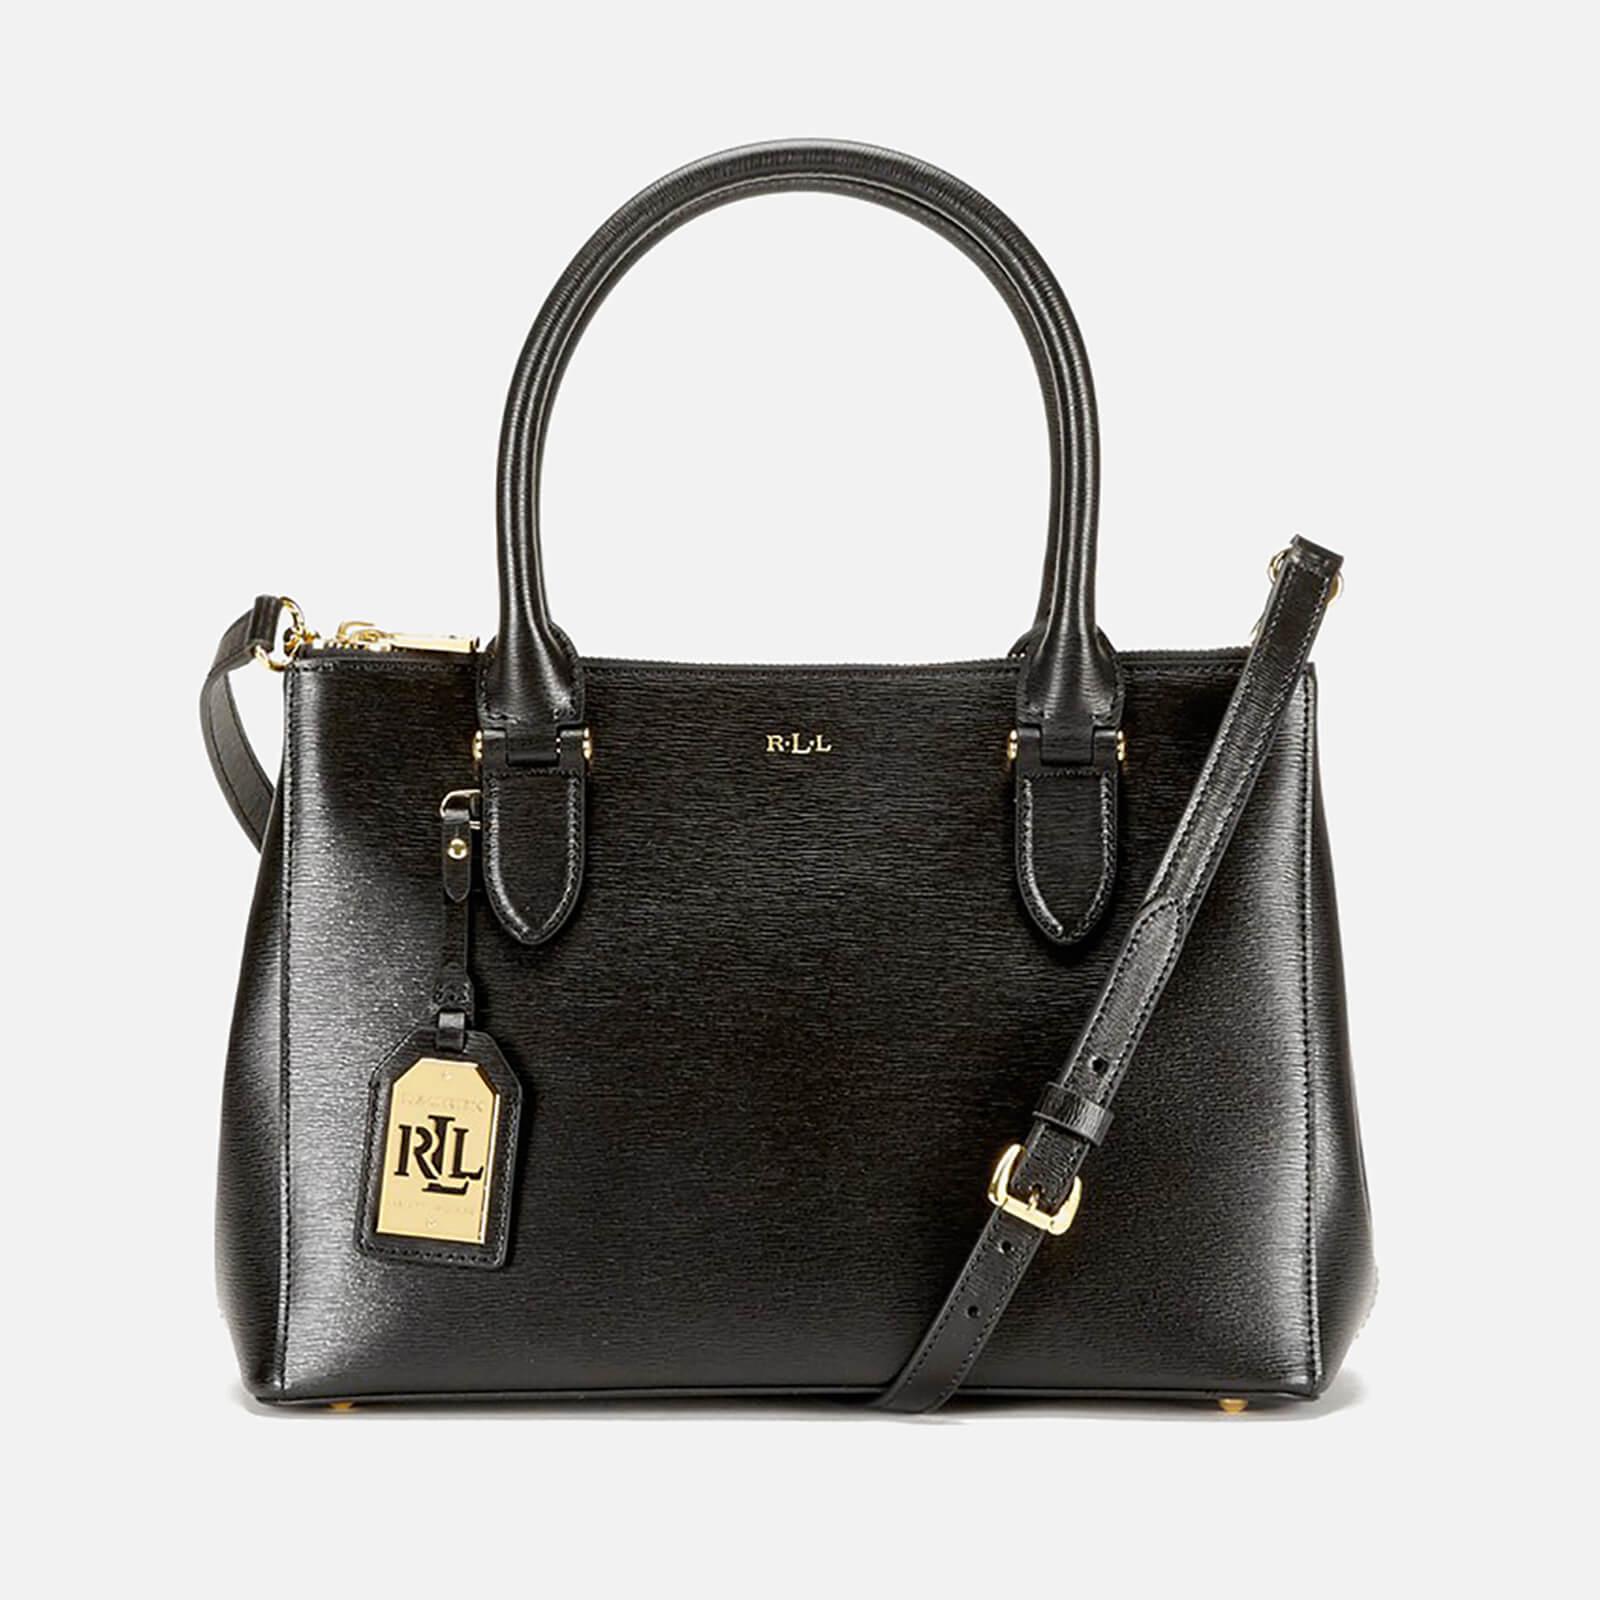 Lauren by Ralph Lauren Leather Newbury Double Zipper Shopper Bag in Black -  Lyst